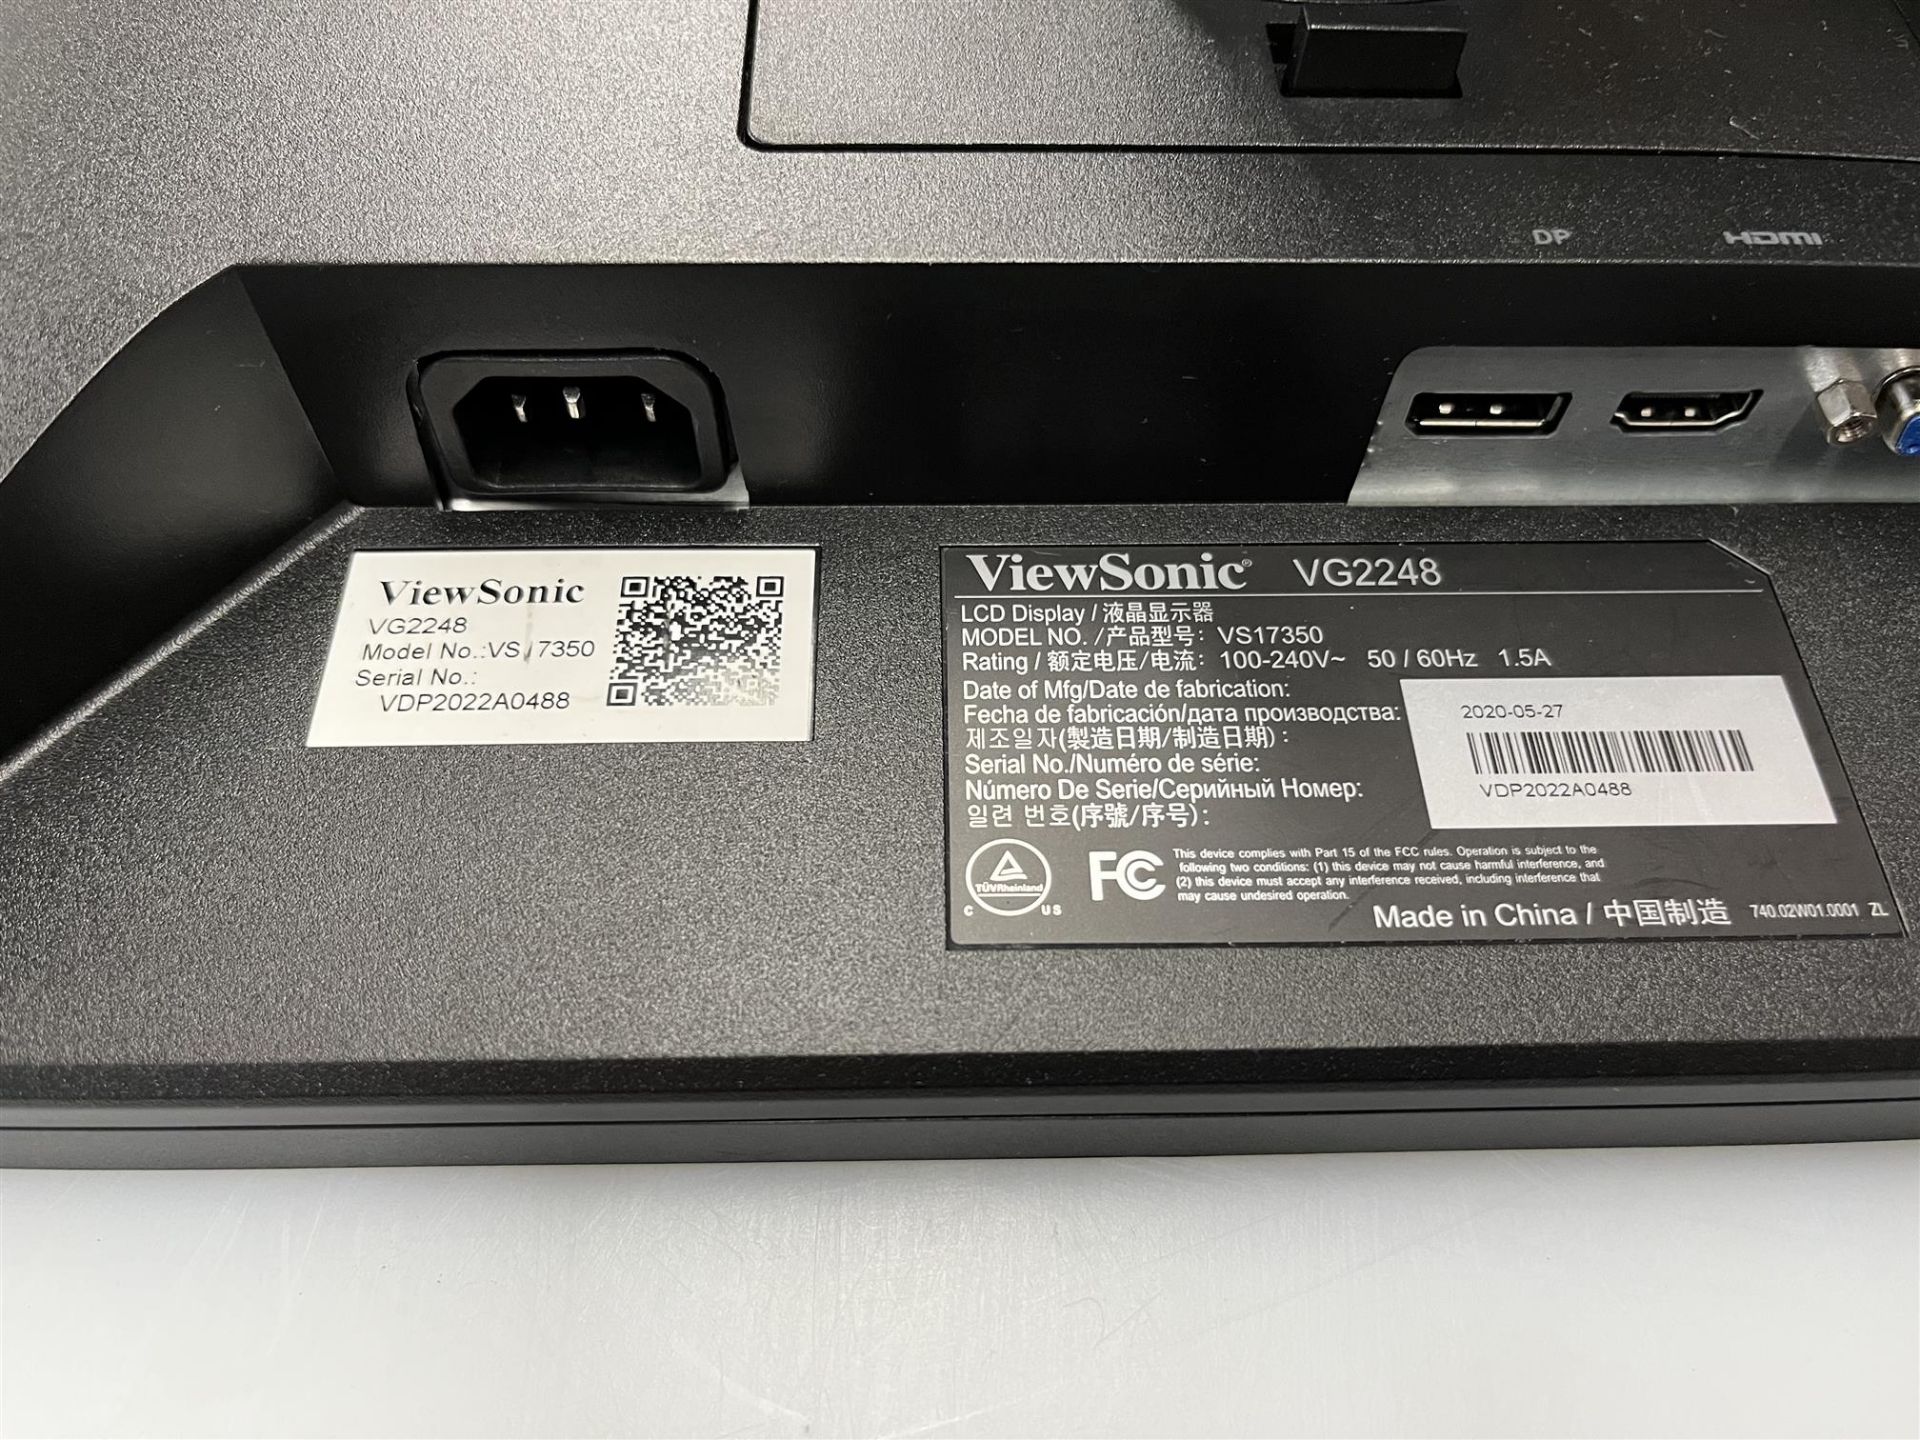 ViewSonic Monitor - Mo#: VG2248 - Image 2 of 2